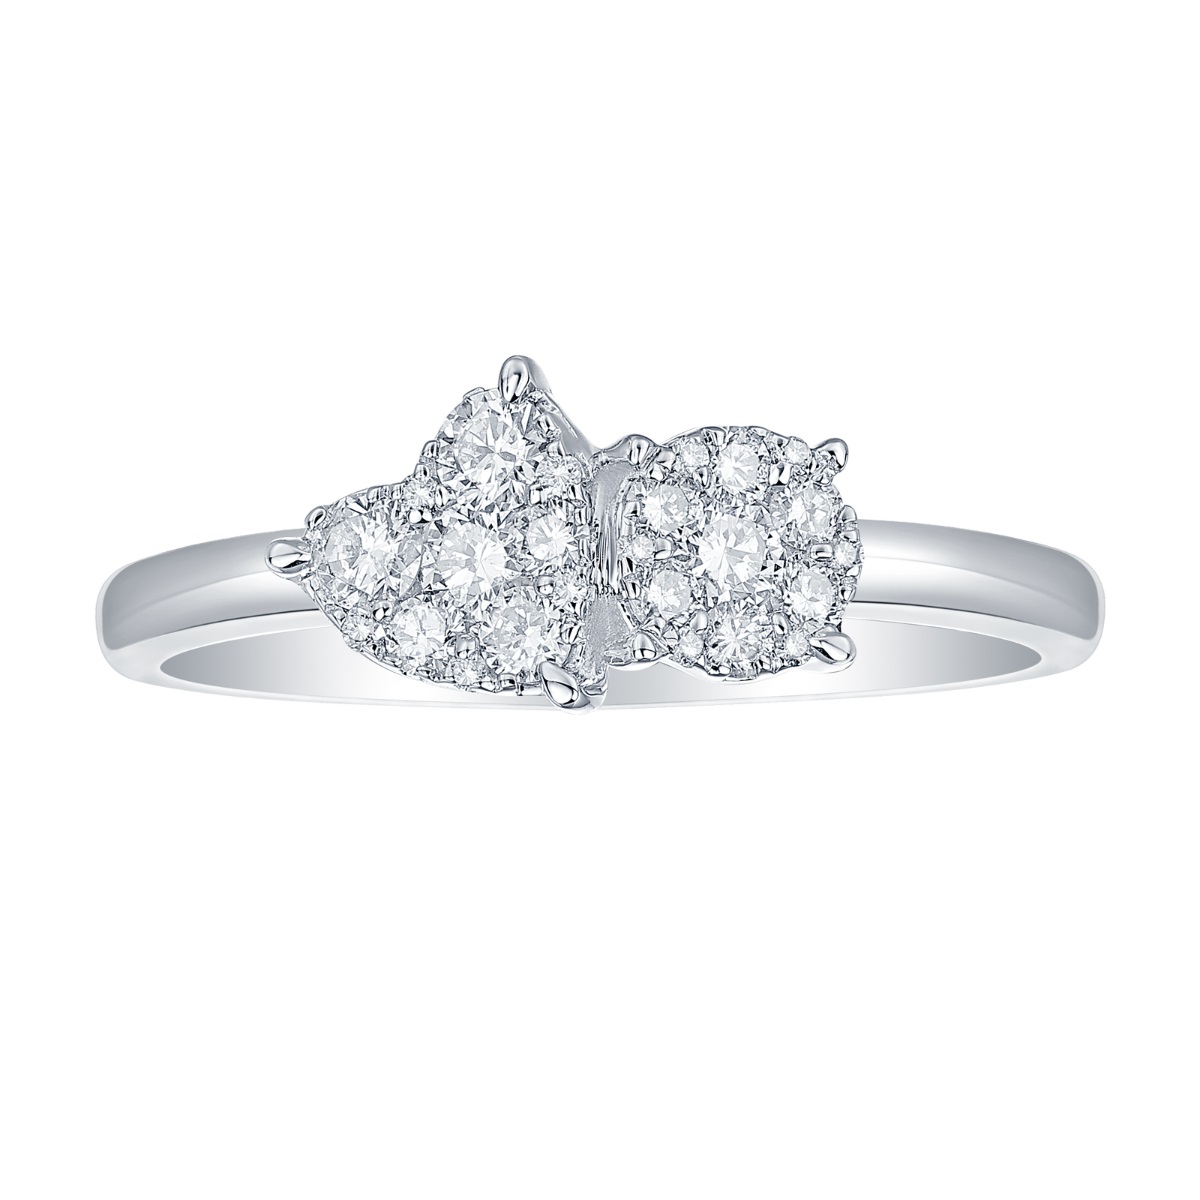 R37090WHT – 18K White Gold Diamond Ring, 0.42 TCW